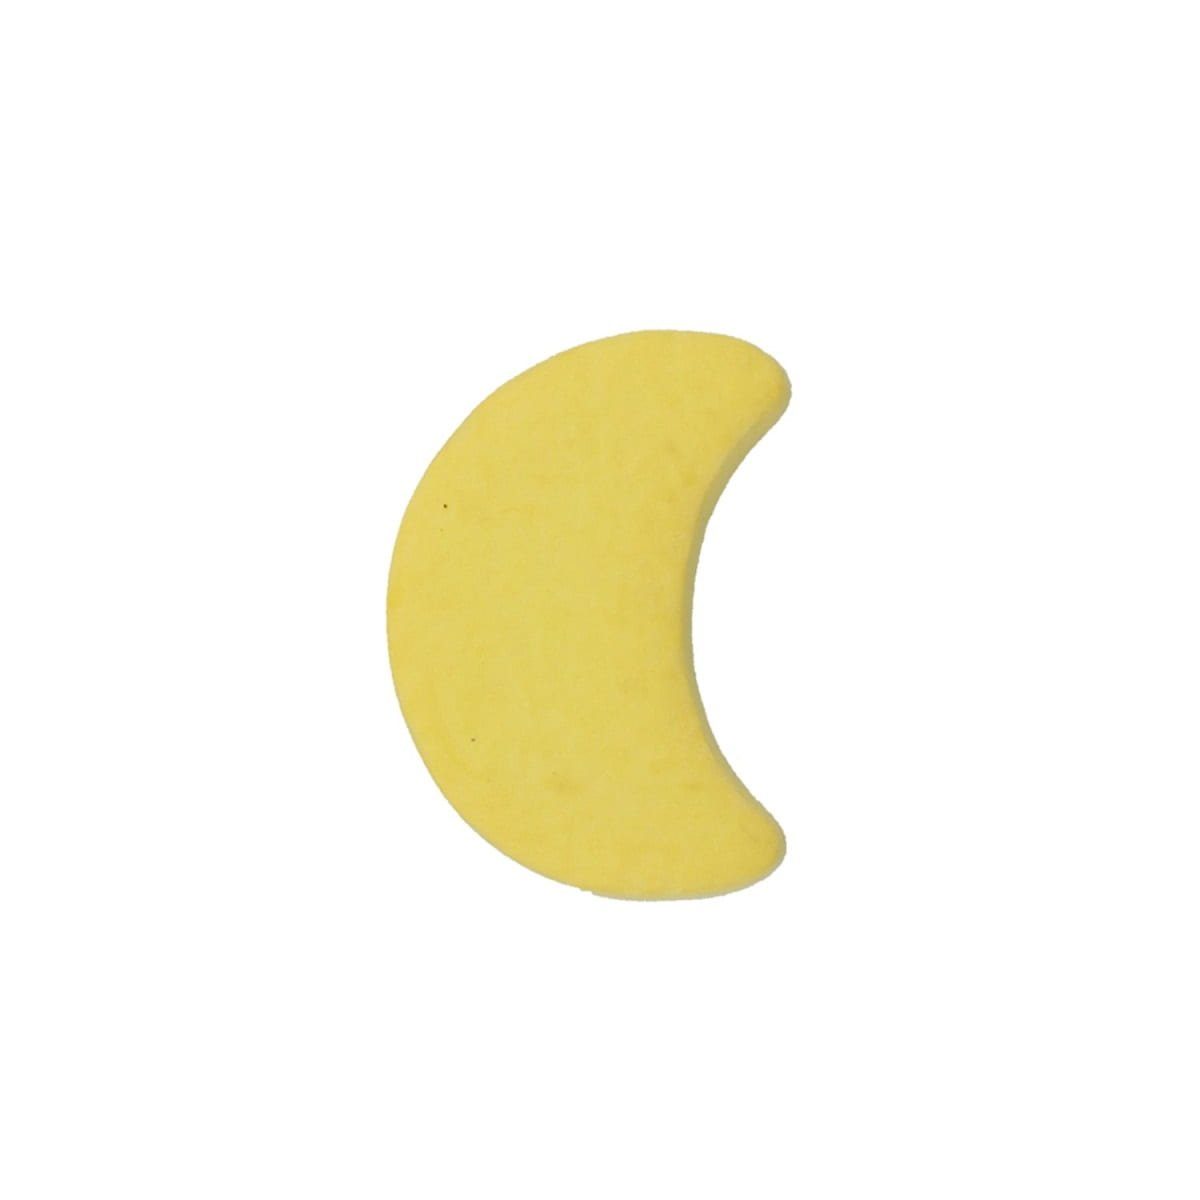 Kindermöbelknopf Gelber Mond Möbelknopf Modell Türbeschlag Beschläge MS